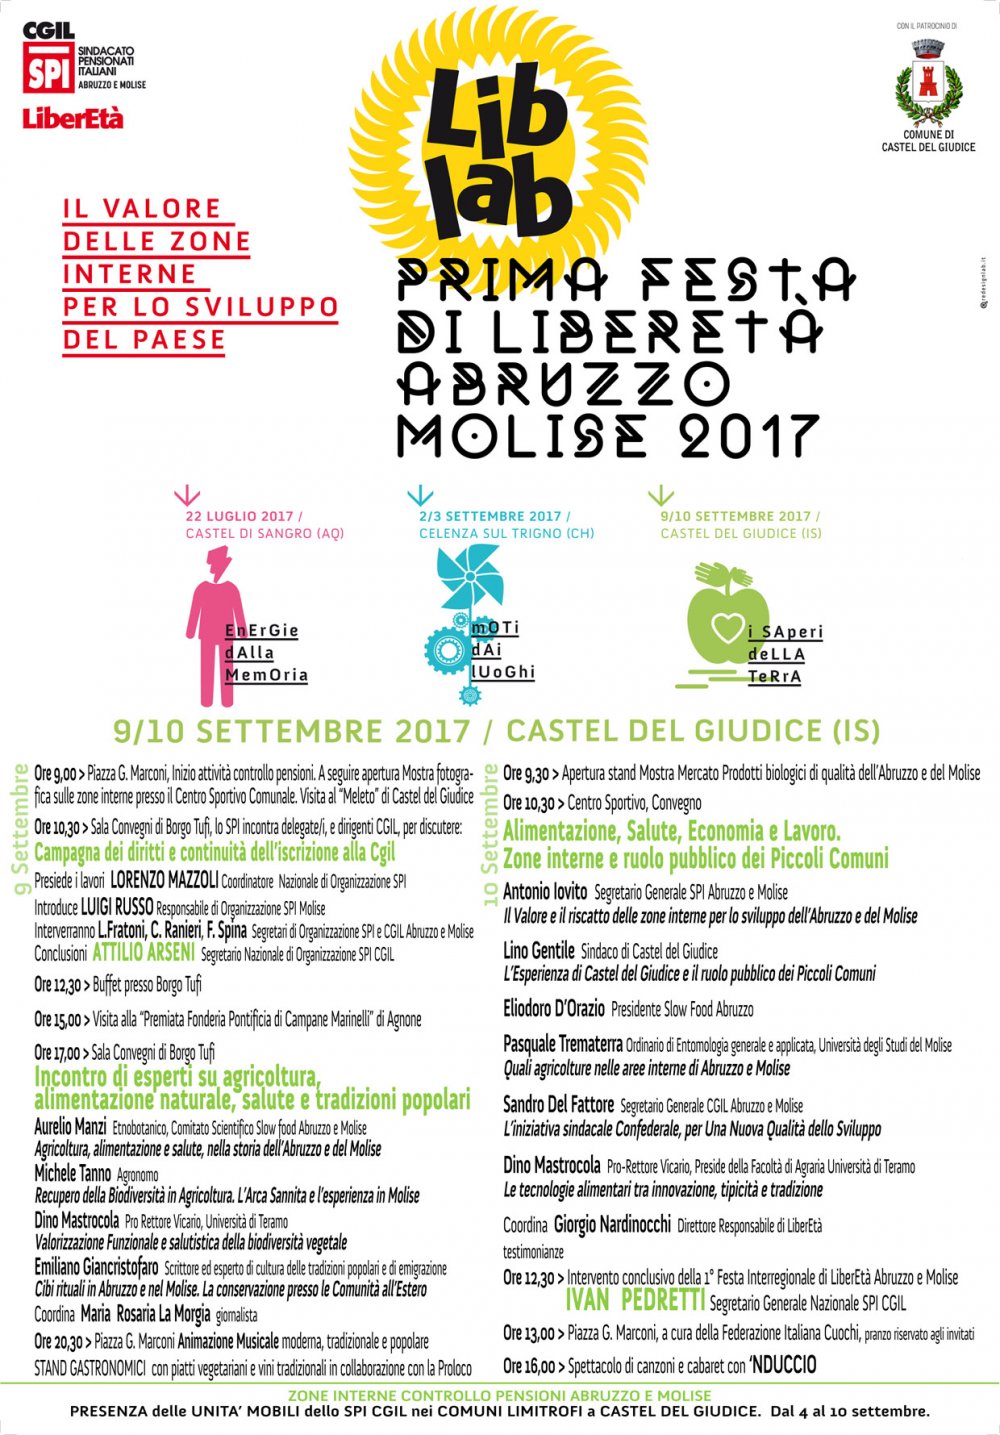 Castel del Giudice (IS) 9 e 10 settembre 2017 Festa LiberEtà